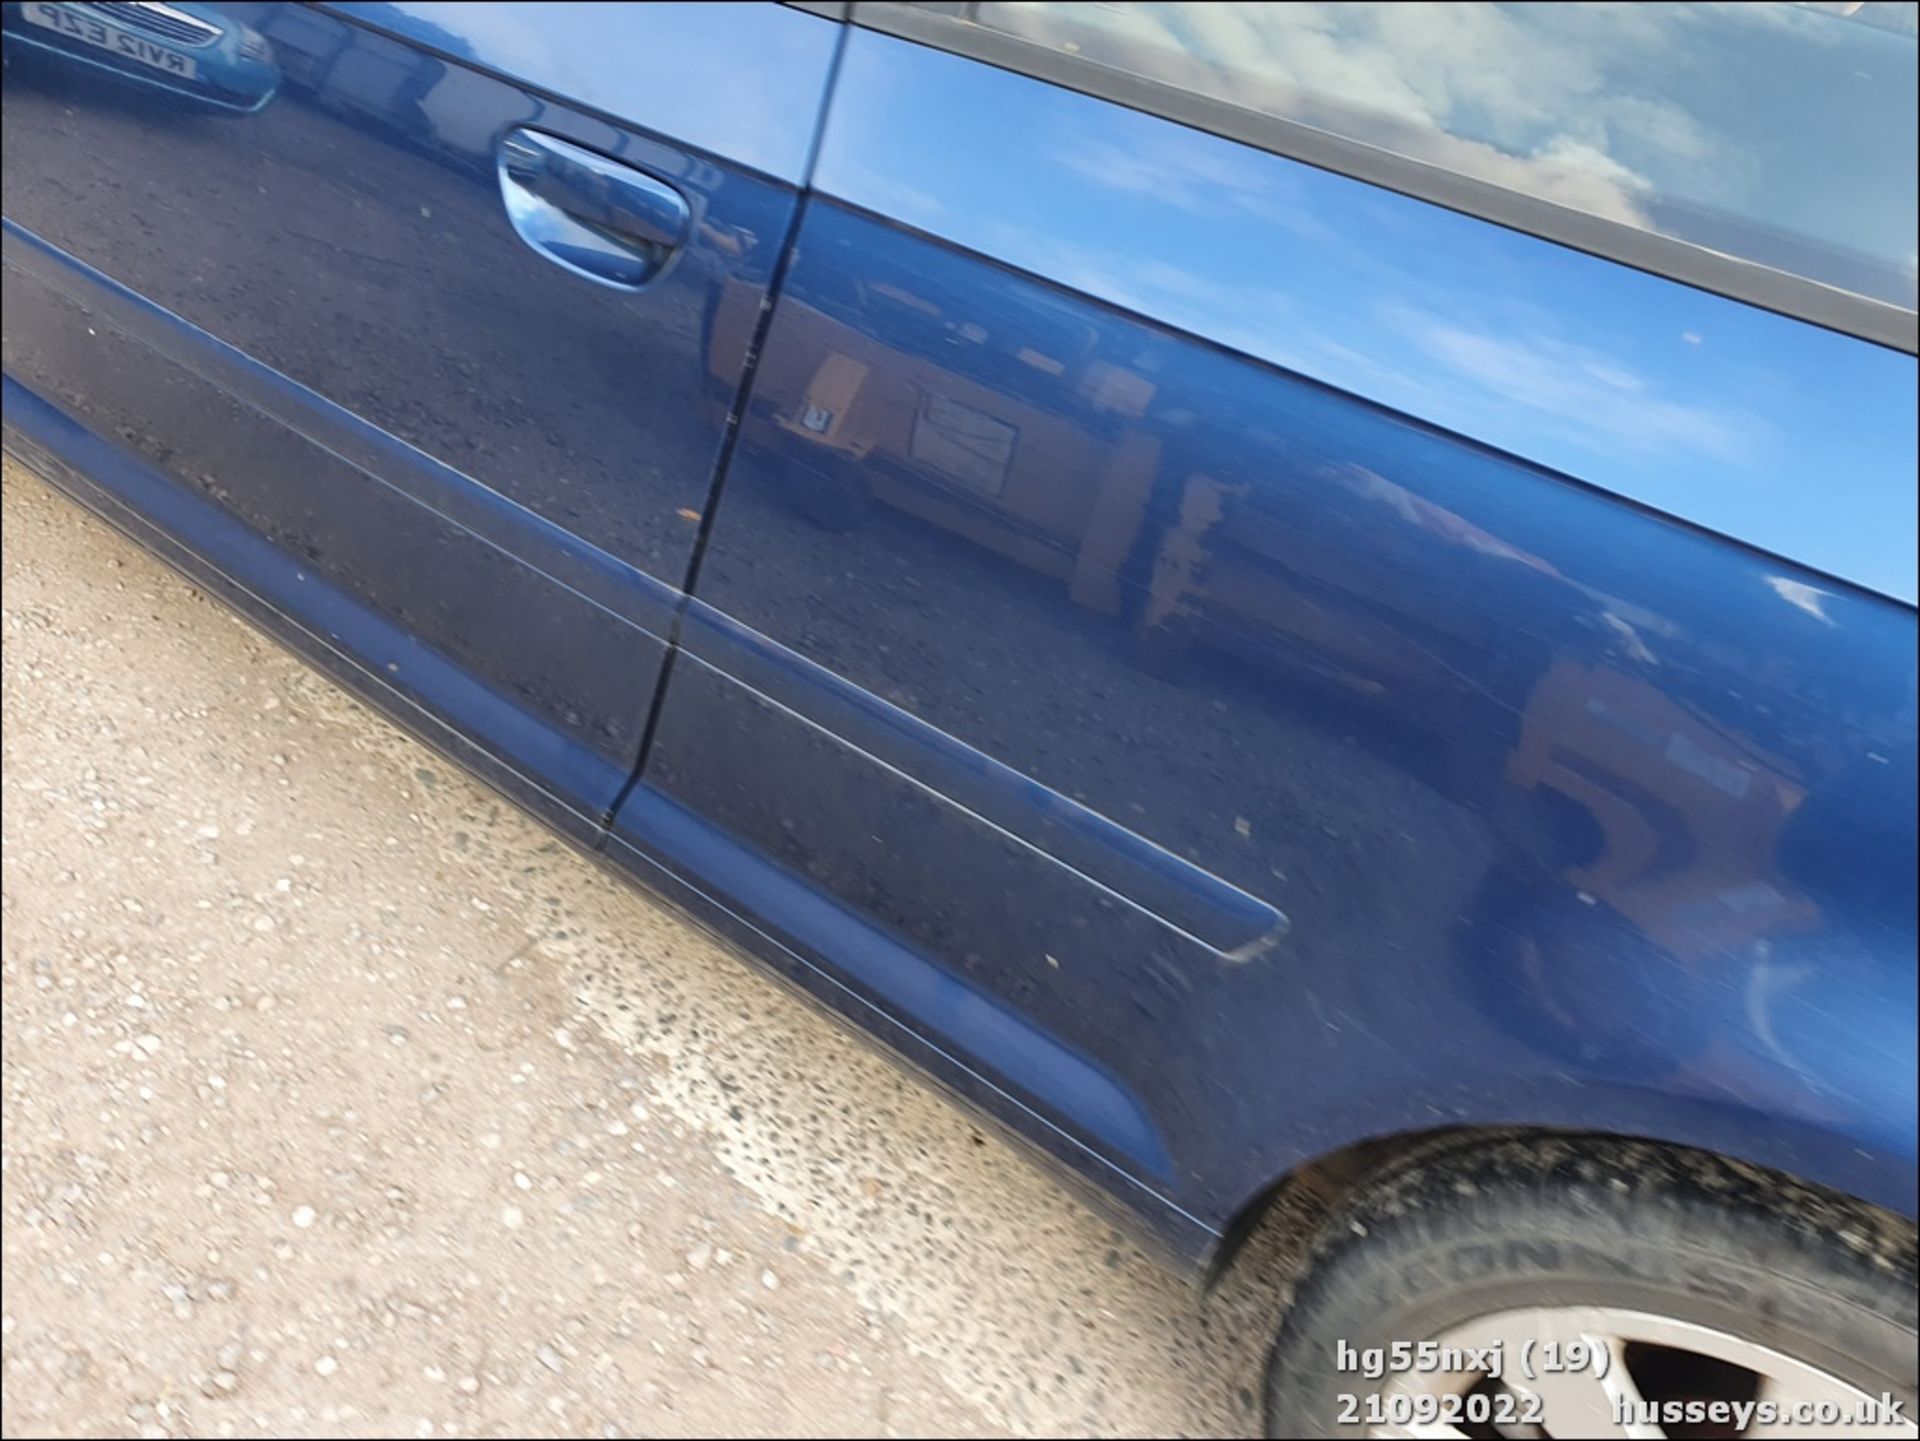 05/55 AUDI A3 SE TDI - 1896cc 3dr Hatchback (Blue, 182k) - Image 19 of 37